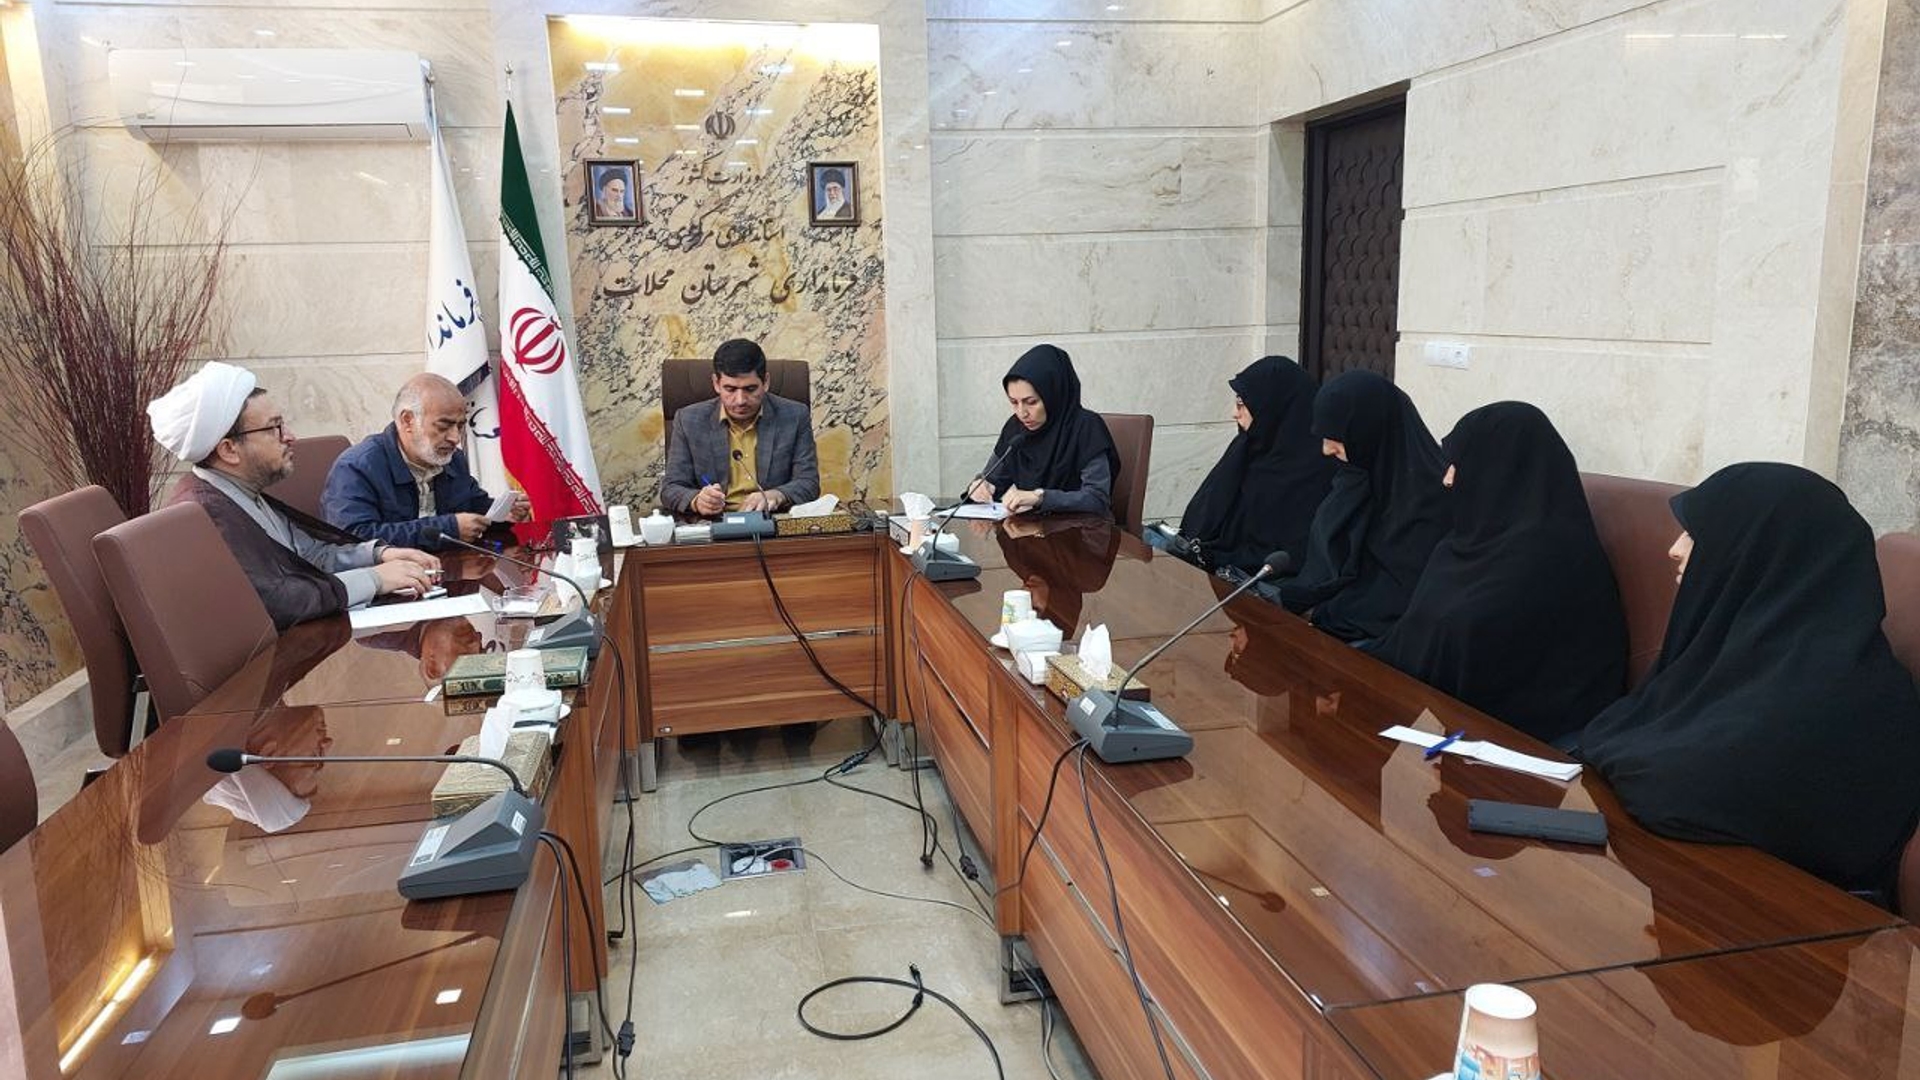 ارزیابی وضعیت عفاف و حجاب در ادارت دولتی شهرستان محلات انجام شد.